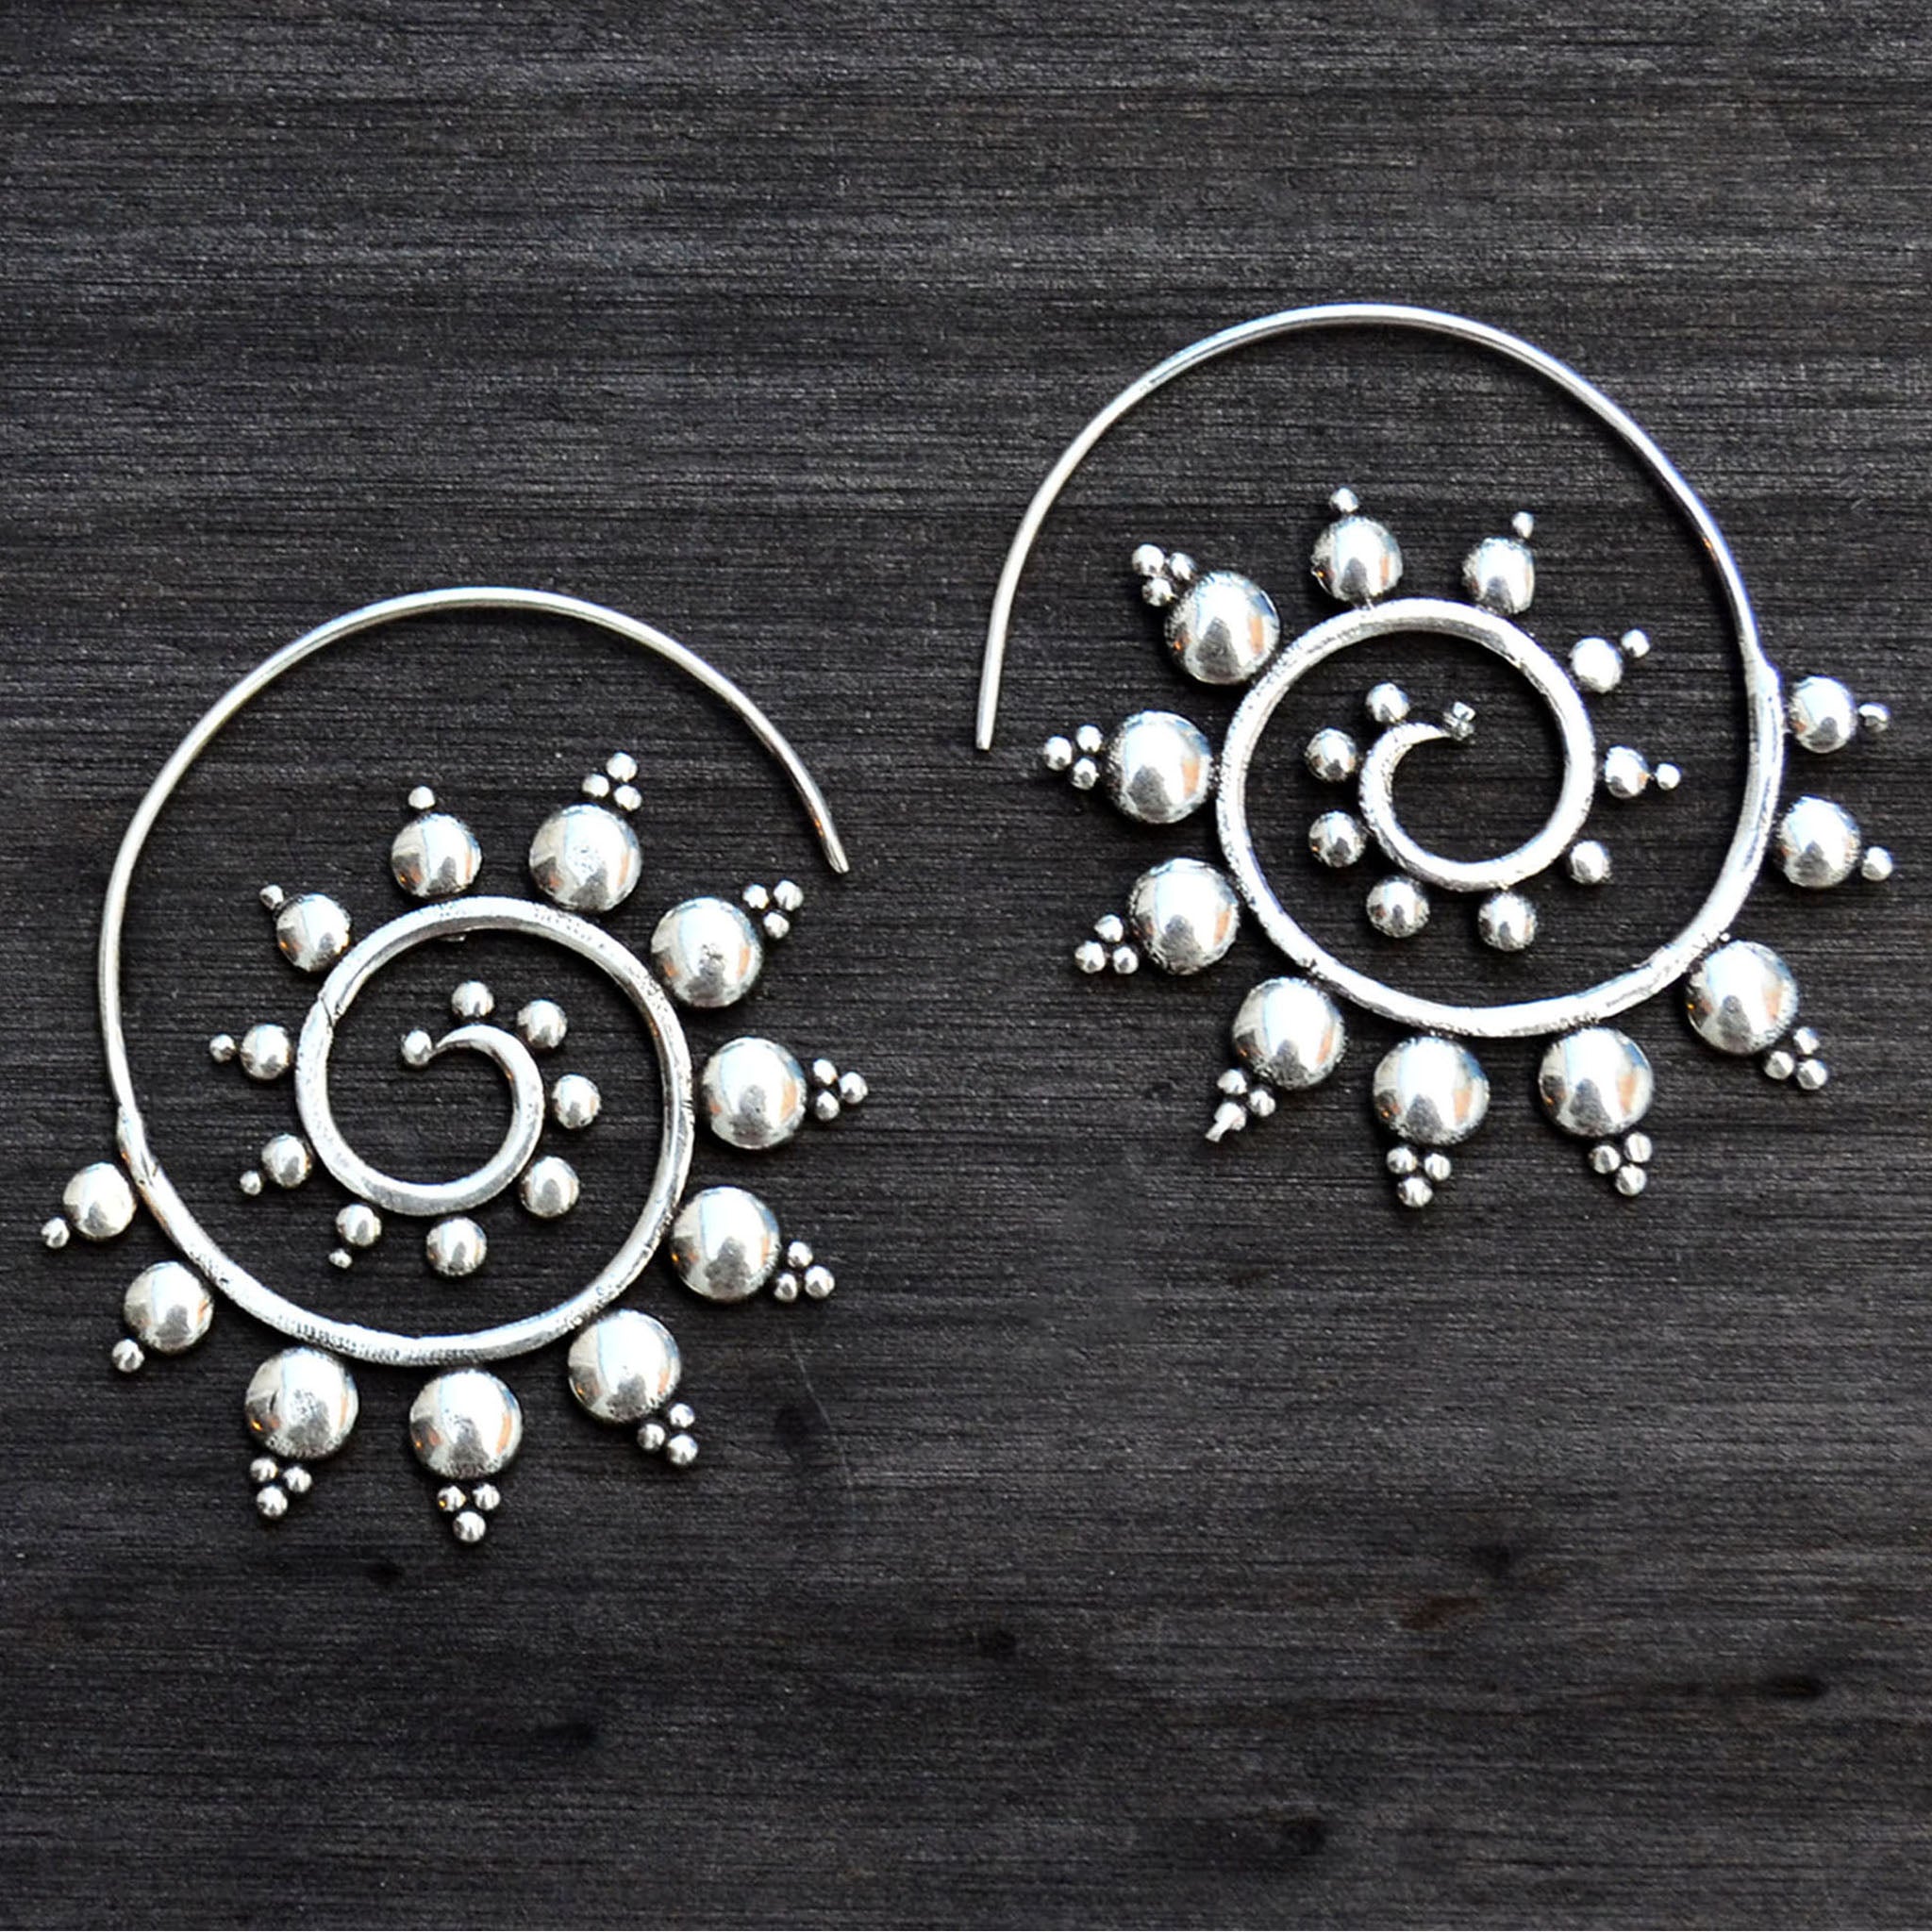 Spiral banjara earrings